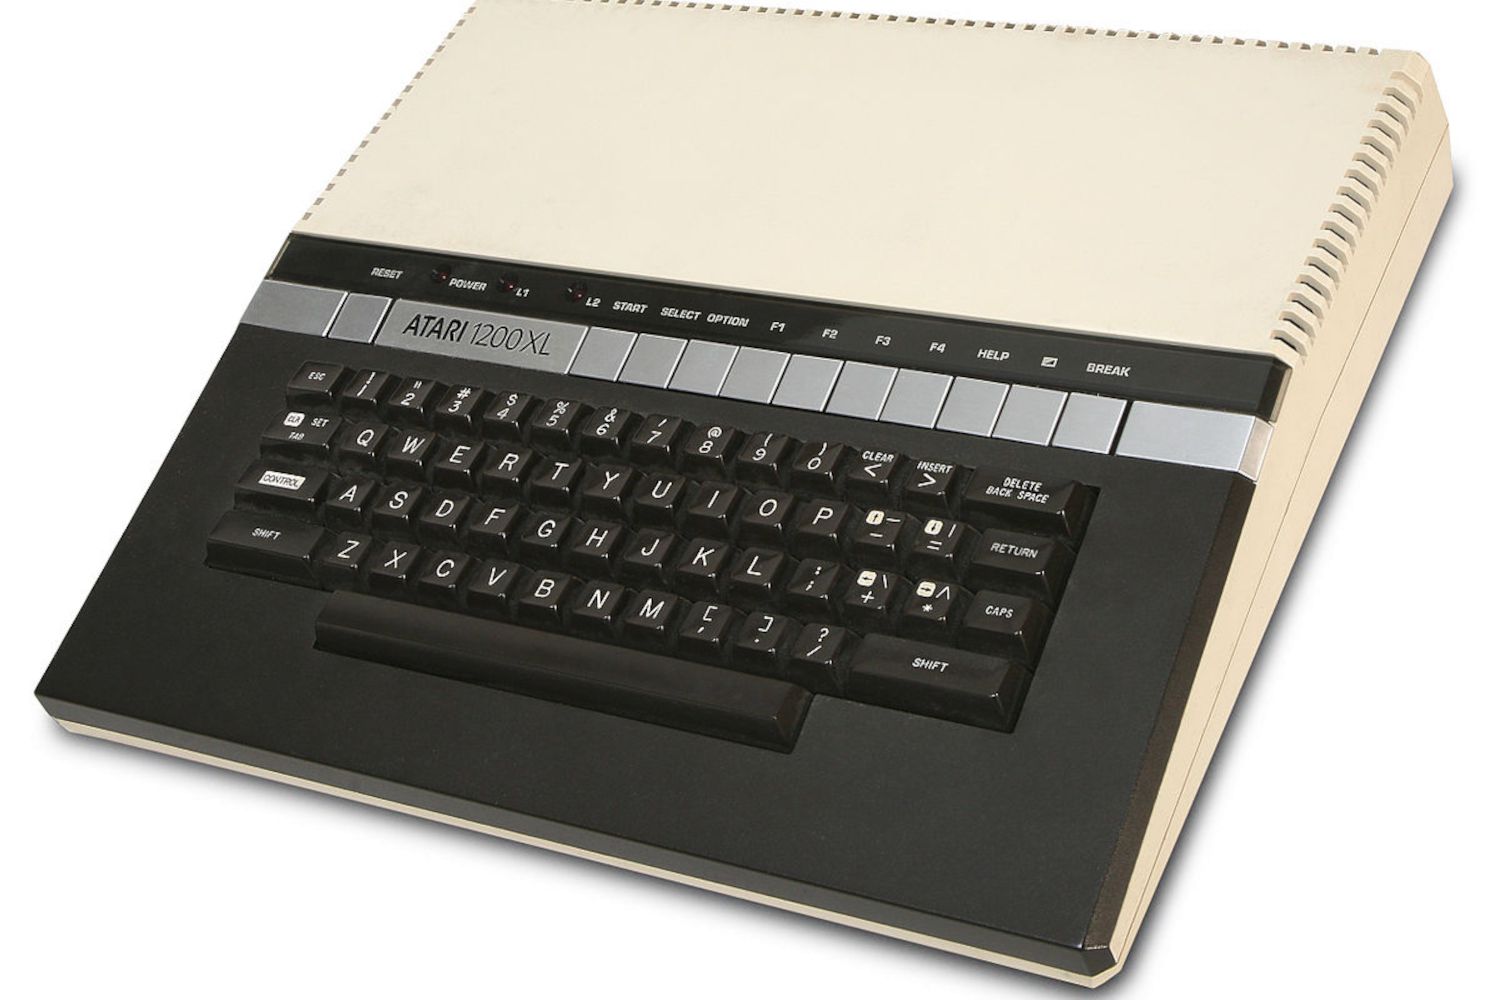 Computador doméstico Atari 1200XL visto de cima